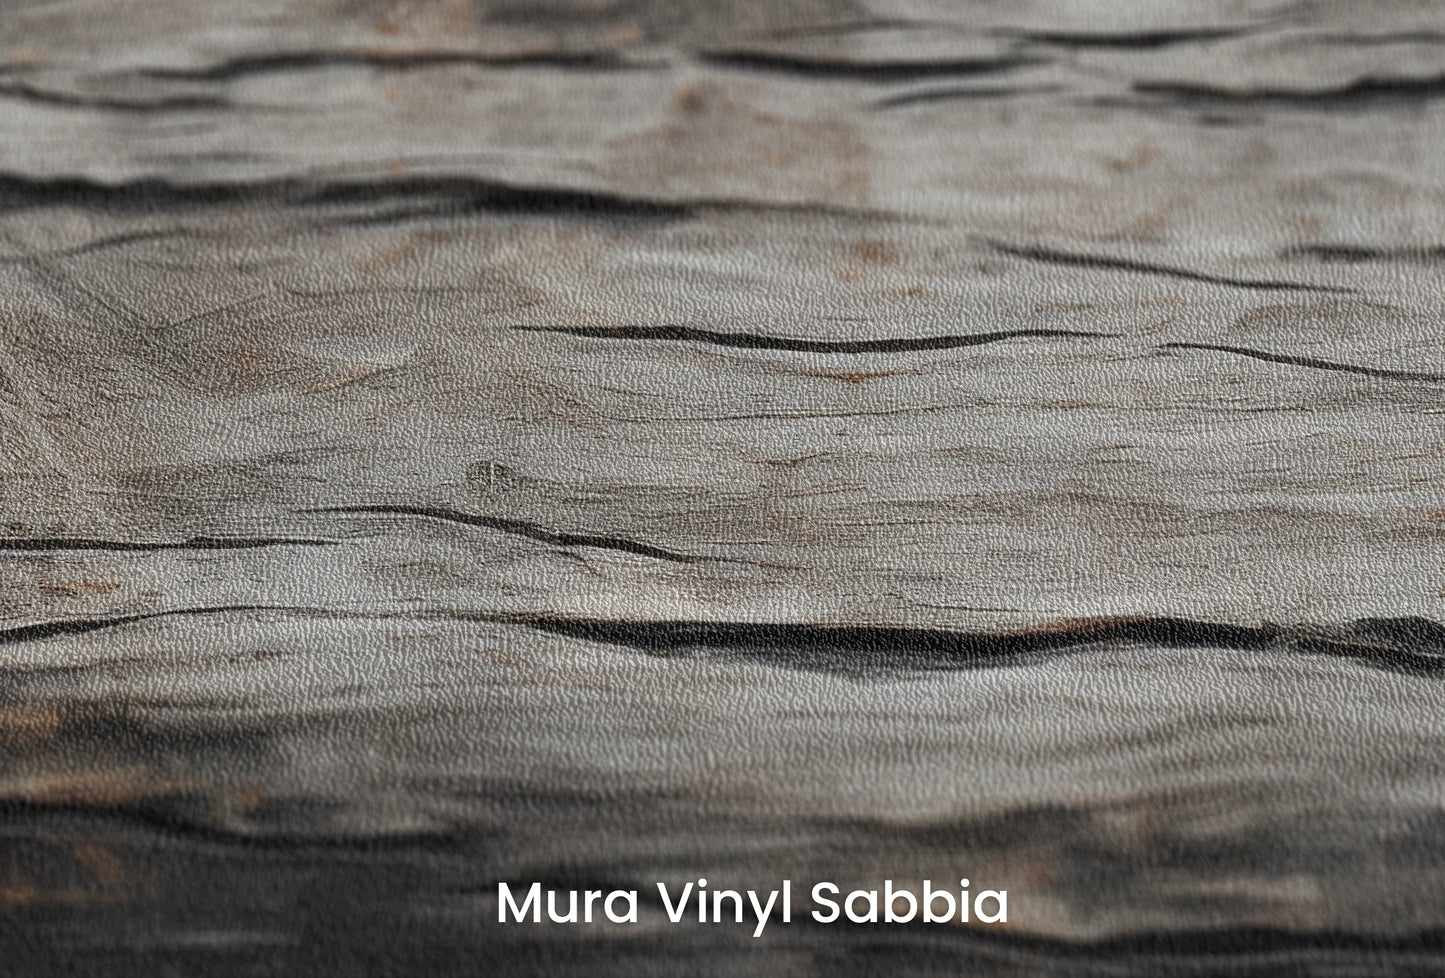 Zbliżenie na artystyczną fototapetę o nazwie Charred Wood na podłożu Mura Vinyl Sabbia struktura grubego ziarna piasku.